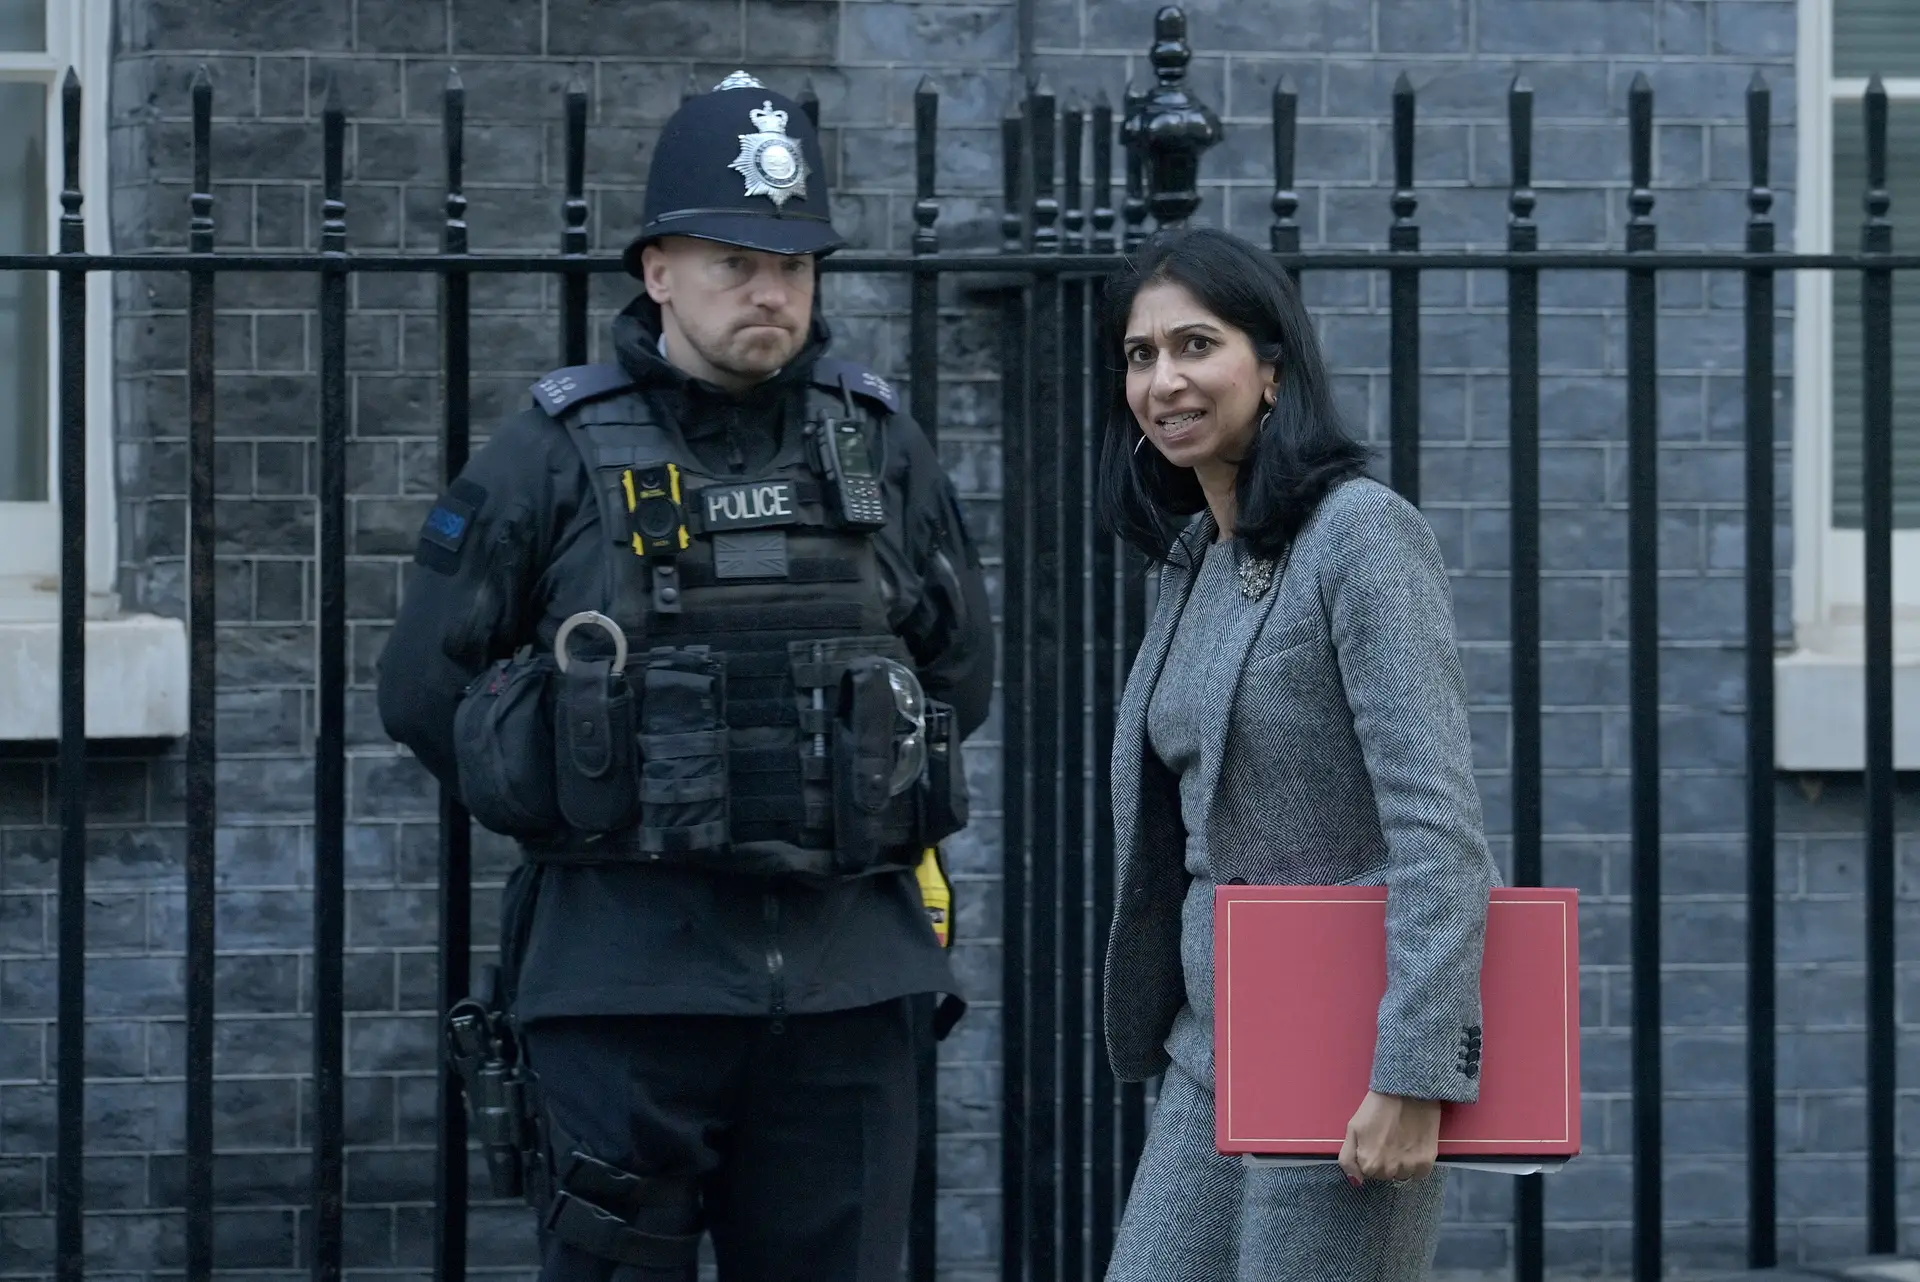 Suella Braverman à porta do n.º10 de Downing Street, residência oficial da primeira-ministra do Reino Unido 